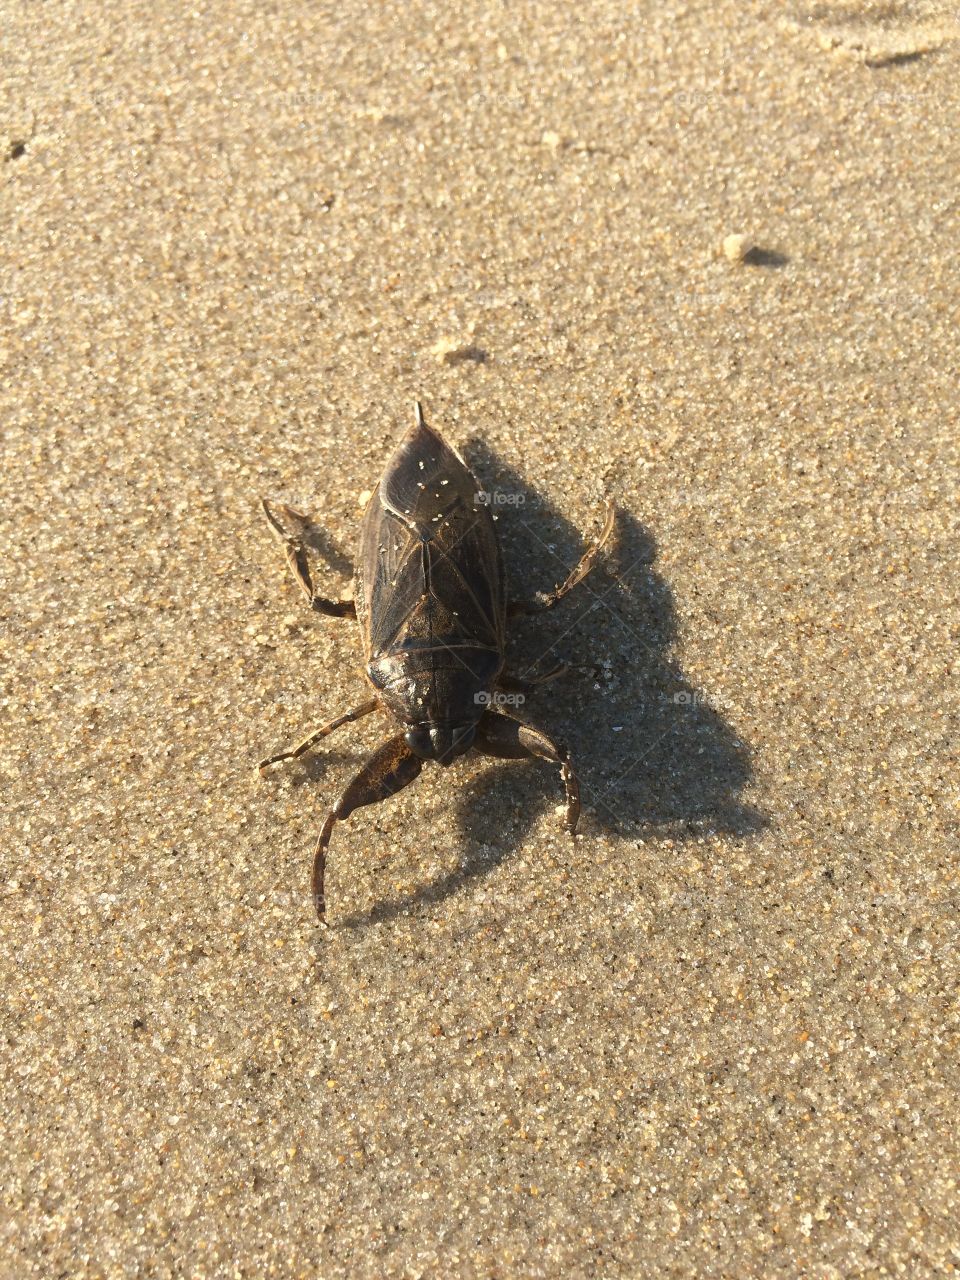 Yuck!  Beach bug!